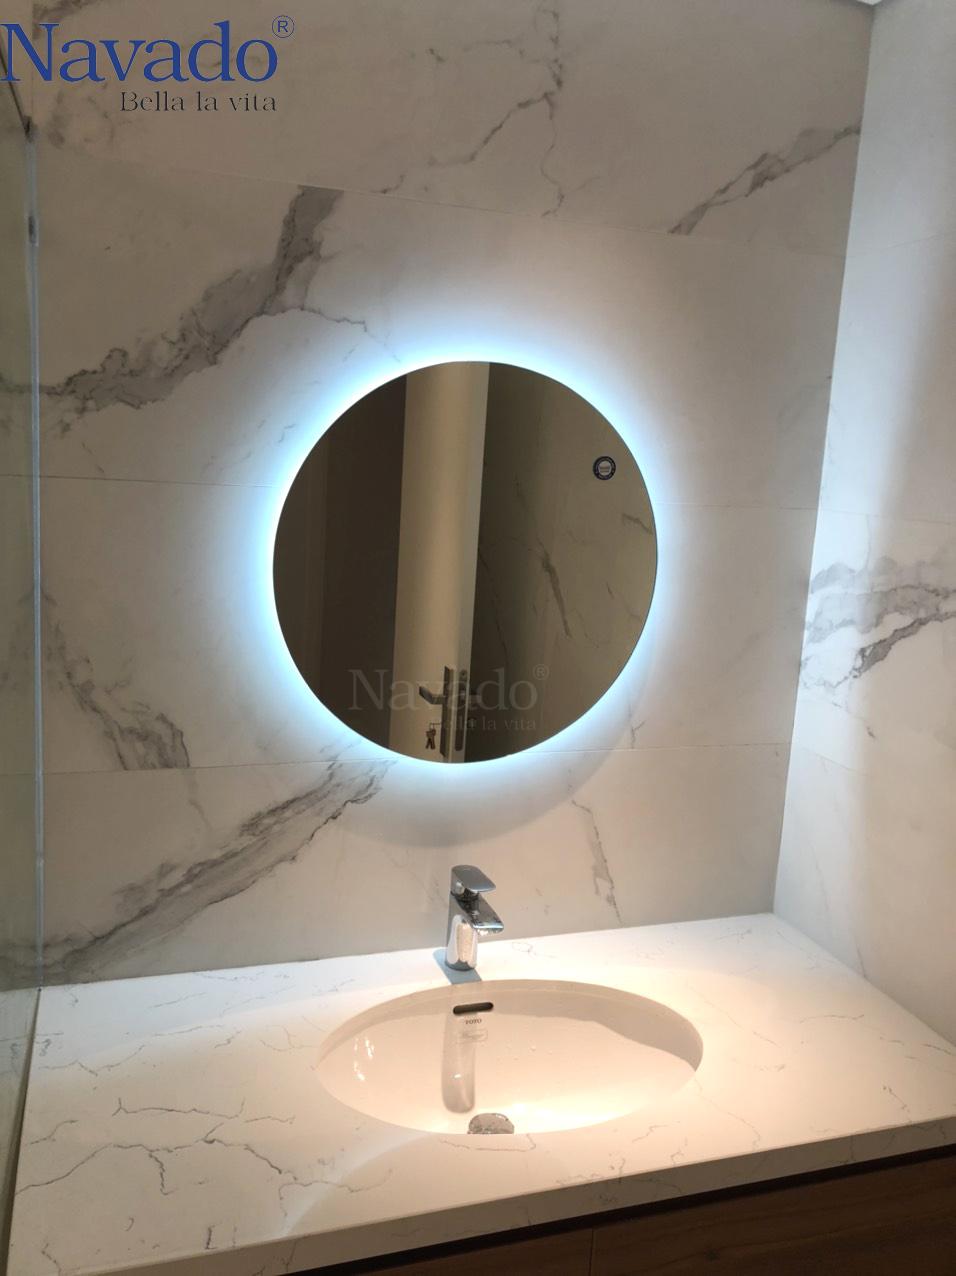 Khám phá không gian tắm tươi mới và thú vị hơn với đèn LED gương phòng tắm. Công nghệ LED đem lại ánh sáng tự nhiên và tối ưu hoá việc trang điểm, cạo râu và làm đẹp. Cùng với đó, tiết kiệm điện năng và tuổi thọ của đèn cũng là điểm cộng lớn.